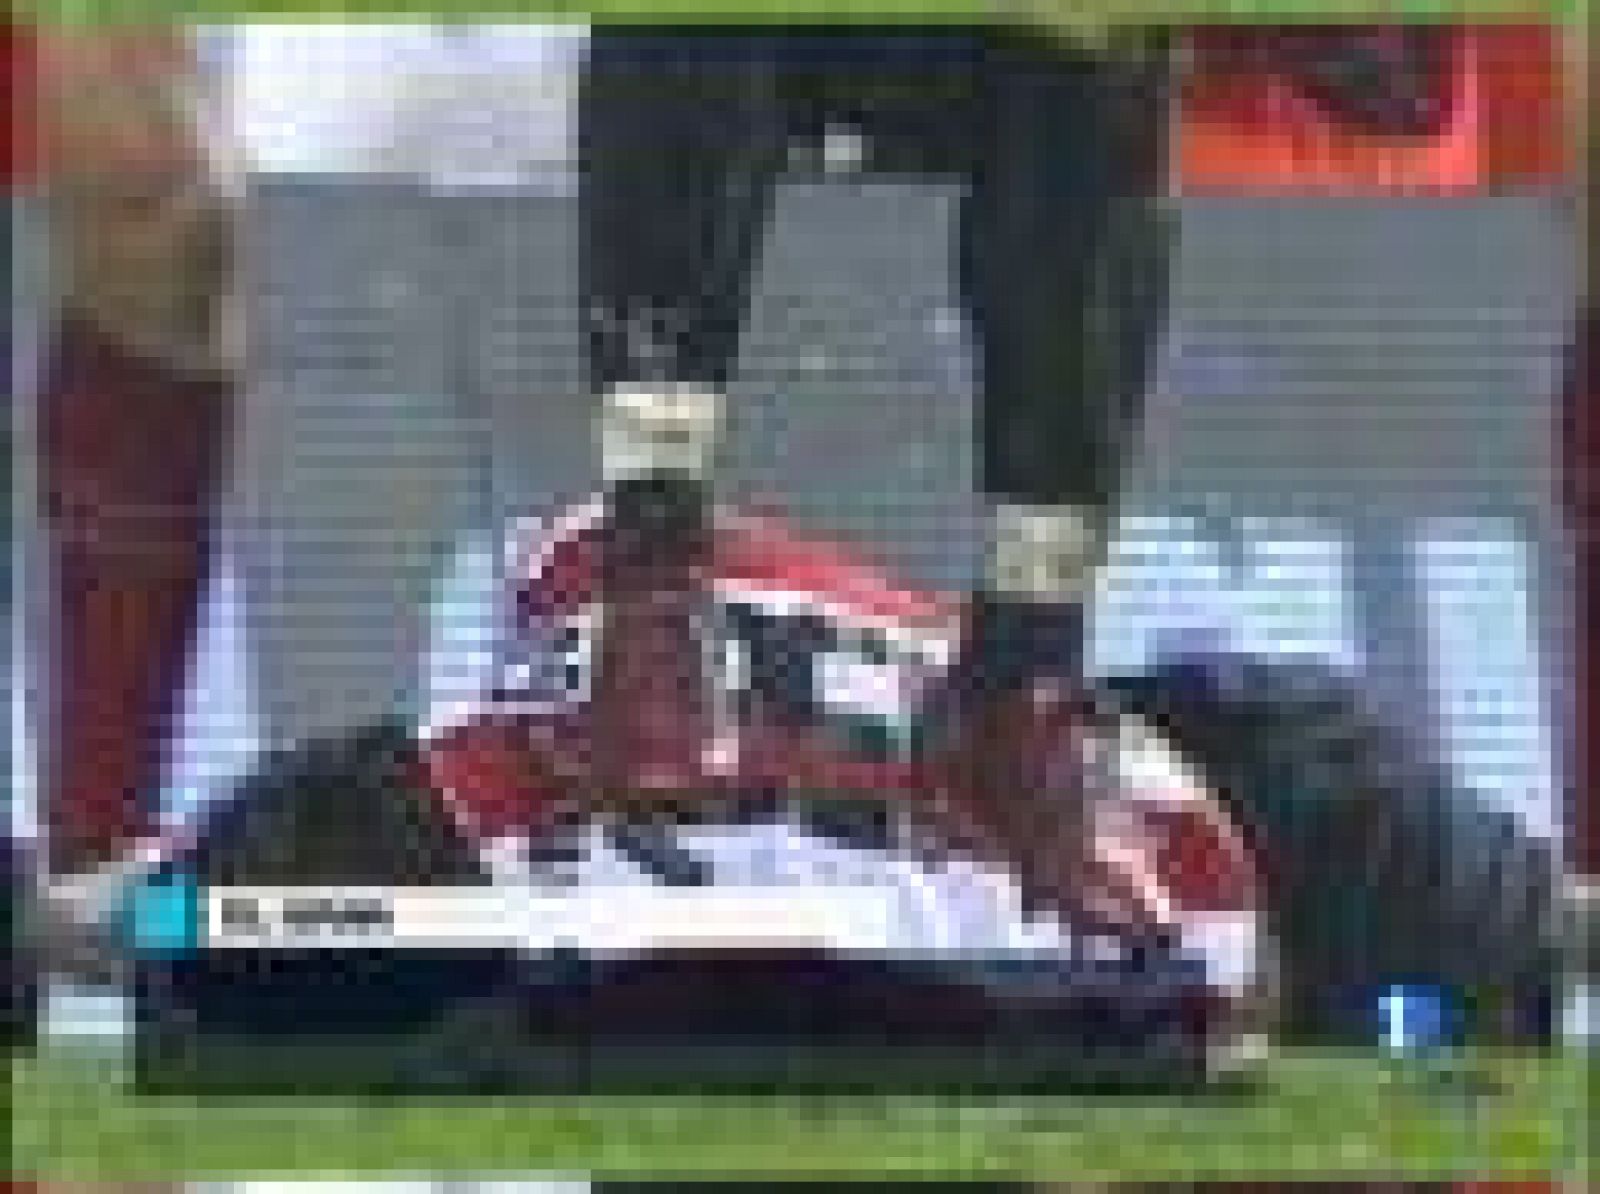 El centrocampista del Athletic de Bilbao Carlos Gurpegui fue retirado en camilla en el partido ante el Sprorting  debido al fuerte encontronazo con Iván Cuéllar. Se fracturó el tabique nasal y sufrió un traumatismo craneoencefálico 